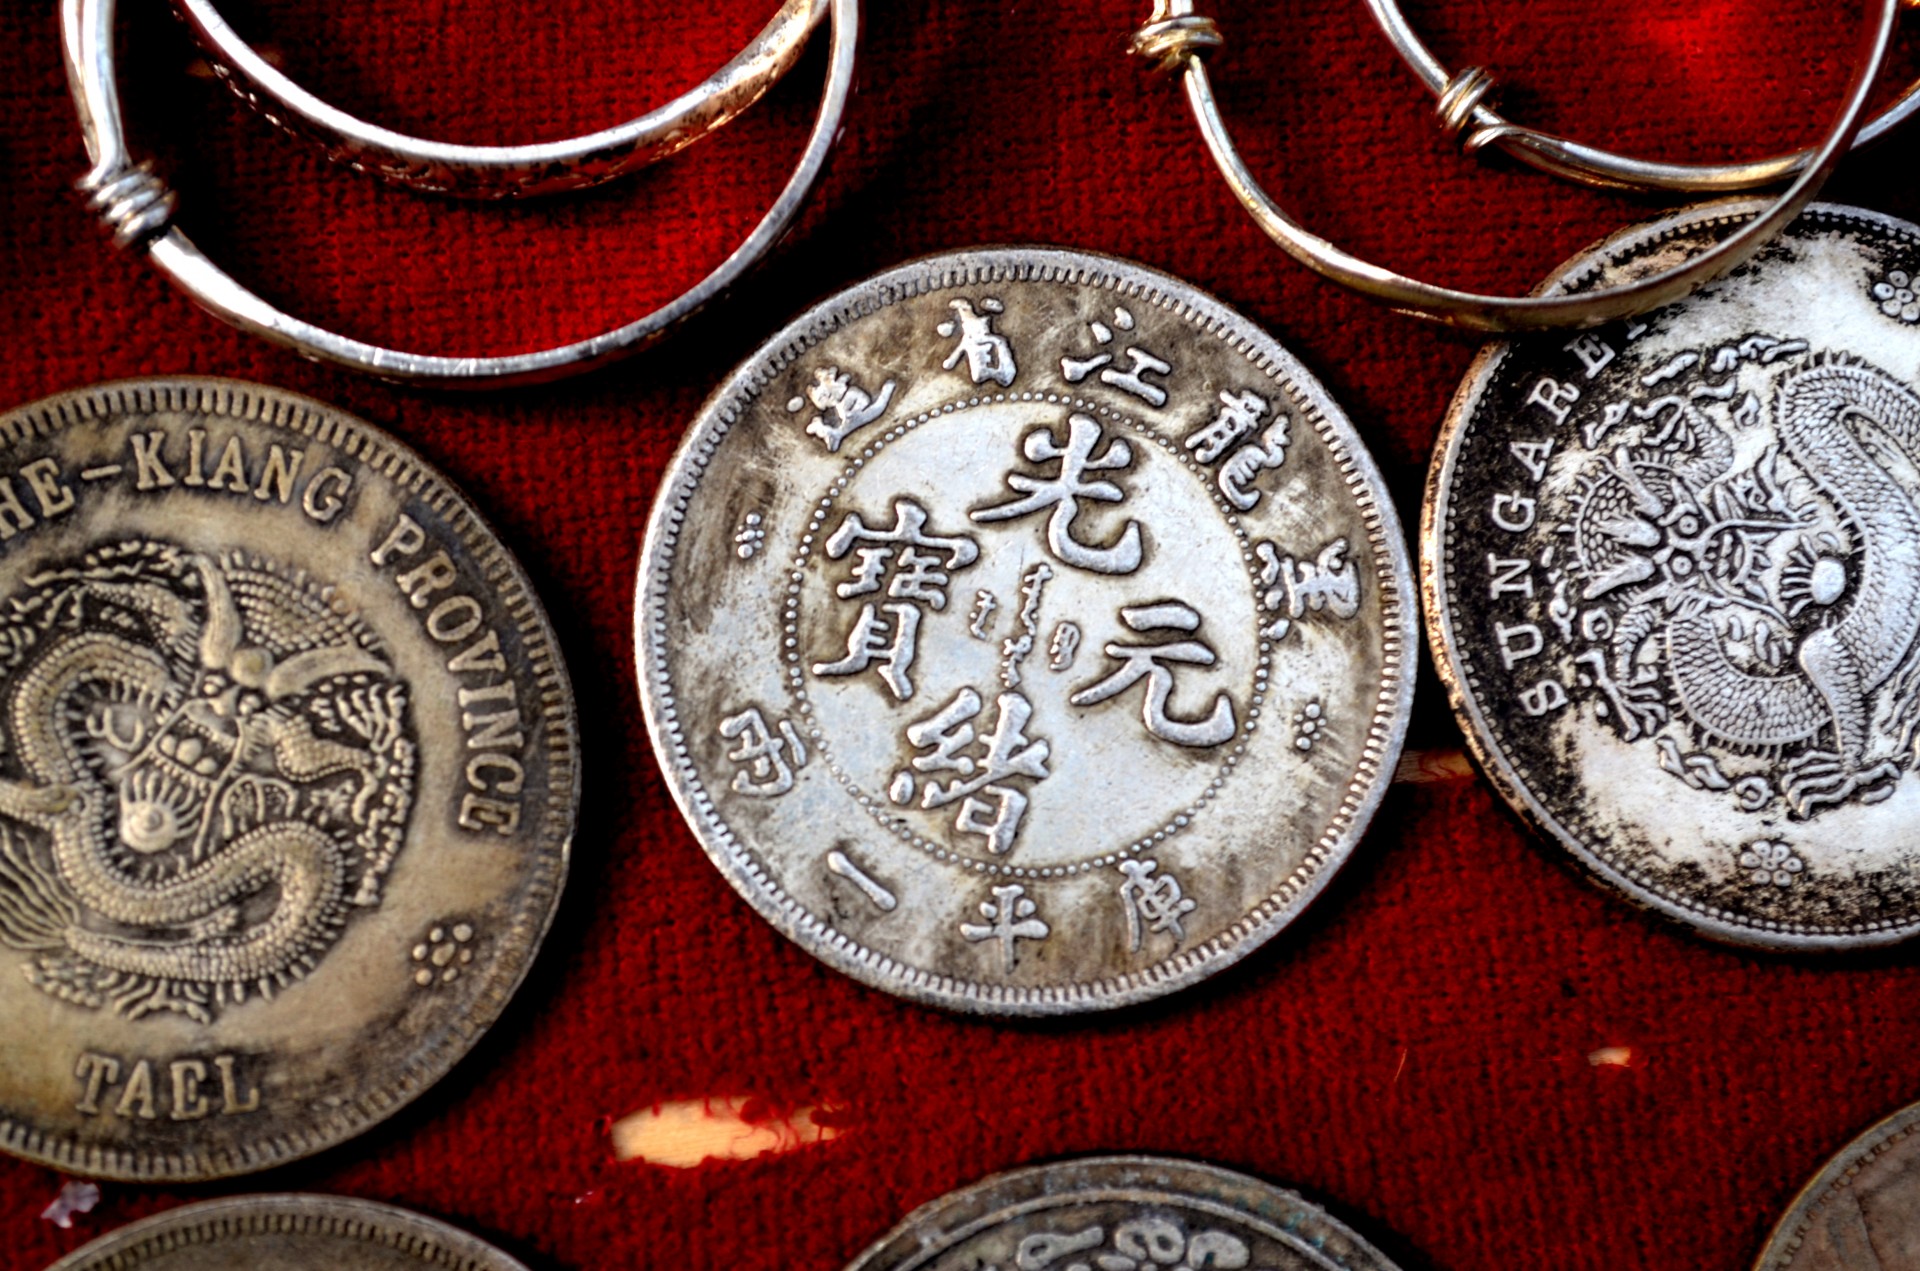 Coin meaning. Китайские монеты. Древние монеты Китая. Редкие китайские монеты. Монета с китайскими иероглифами.